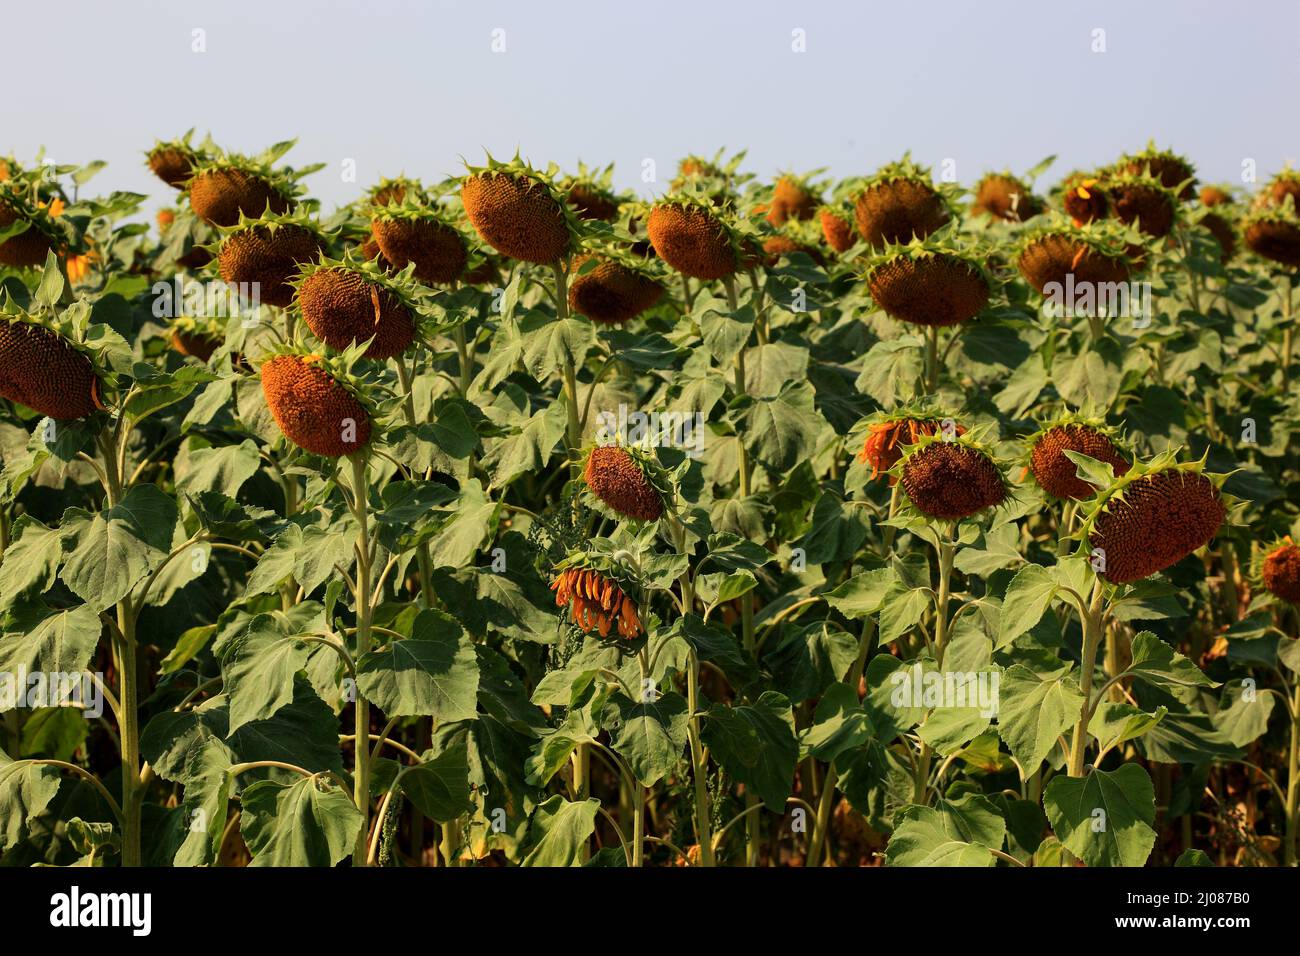 abgeblühte Sonnenblumen, Helianthus annuus, auf einem Sonnenblumenfeld, angebaut zur Produktion von Sonnenblumenkernen und zur Gewinnung von Sonnenblu Stock Photo